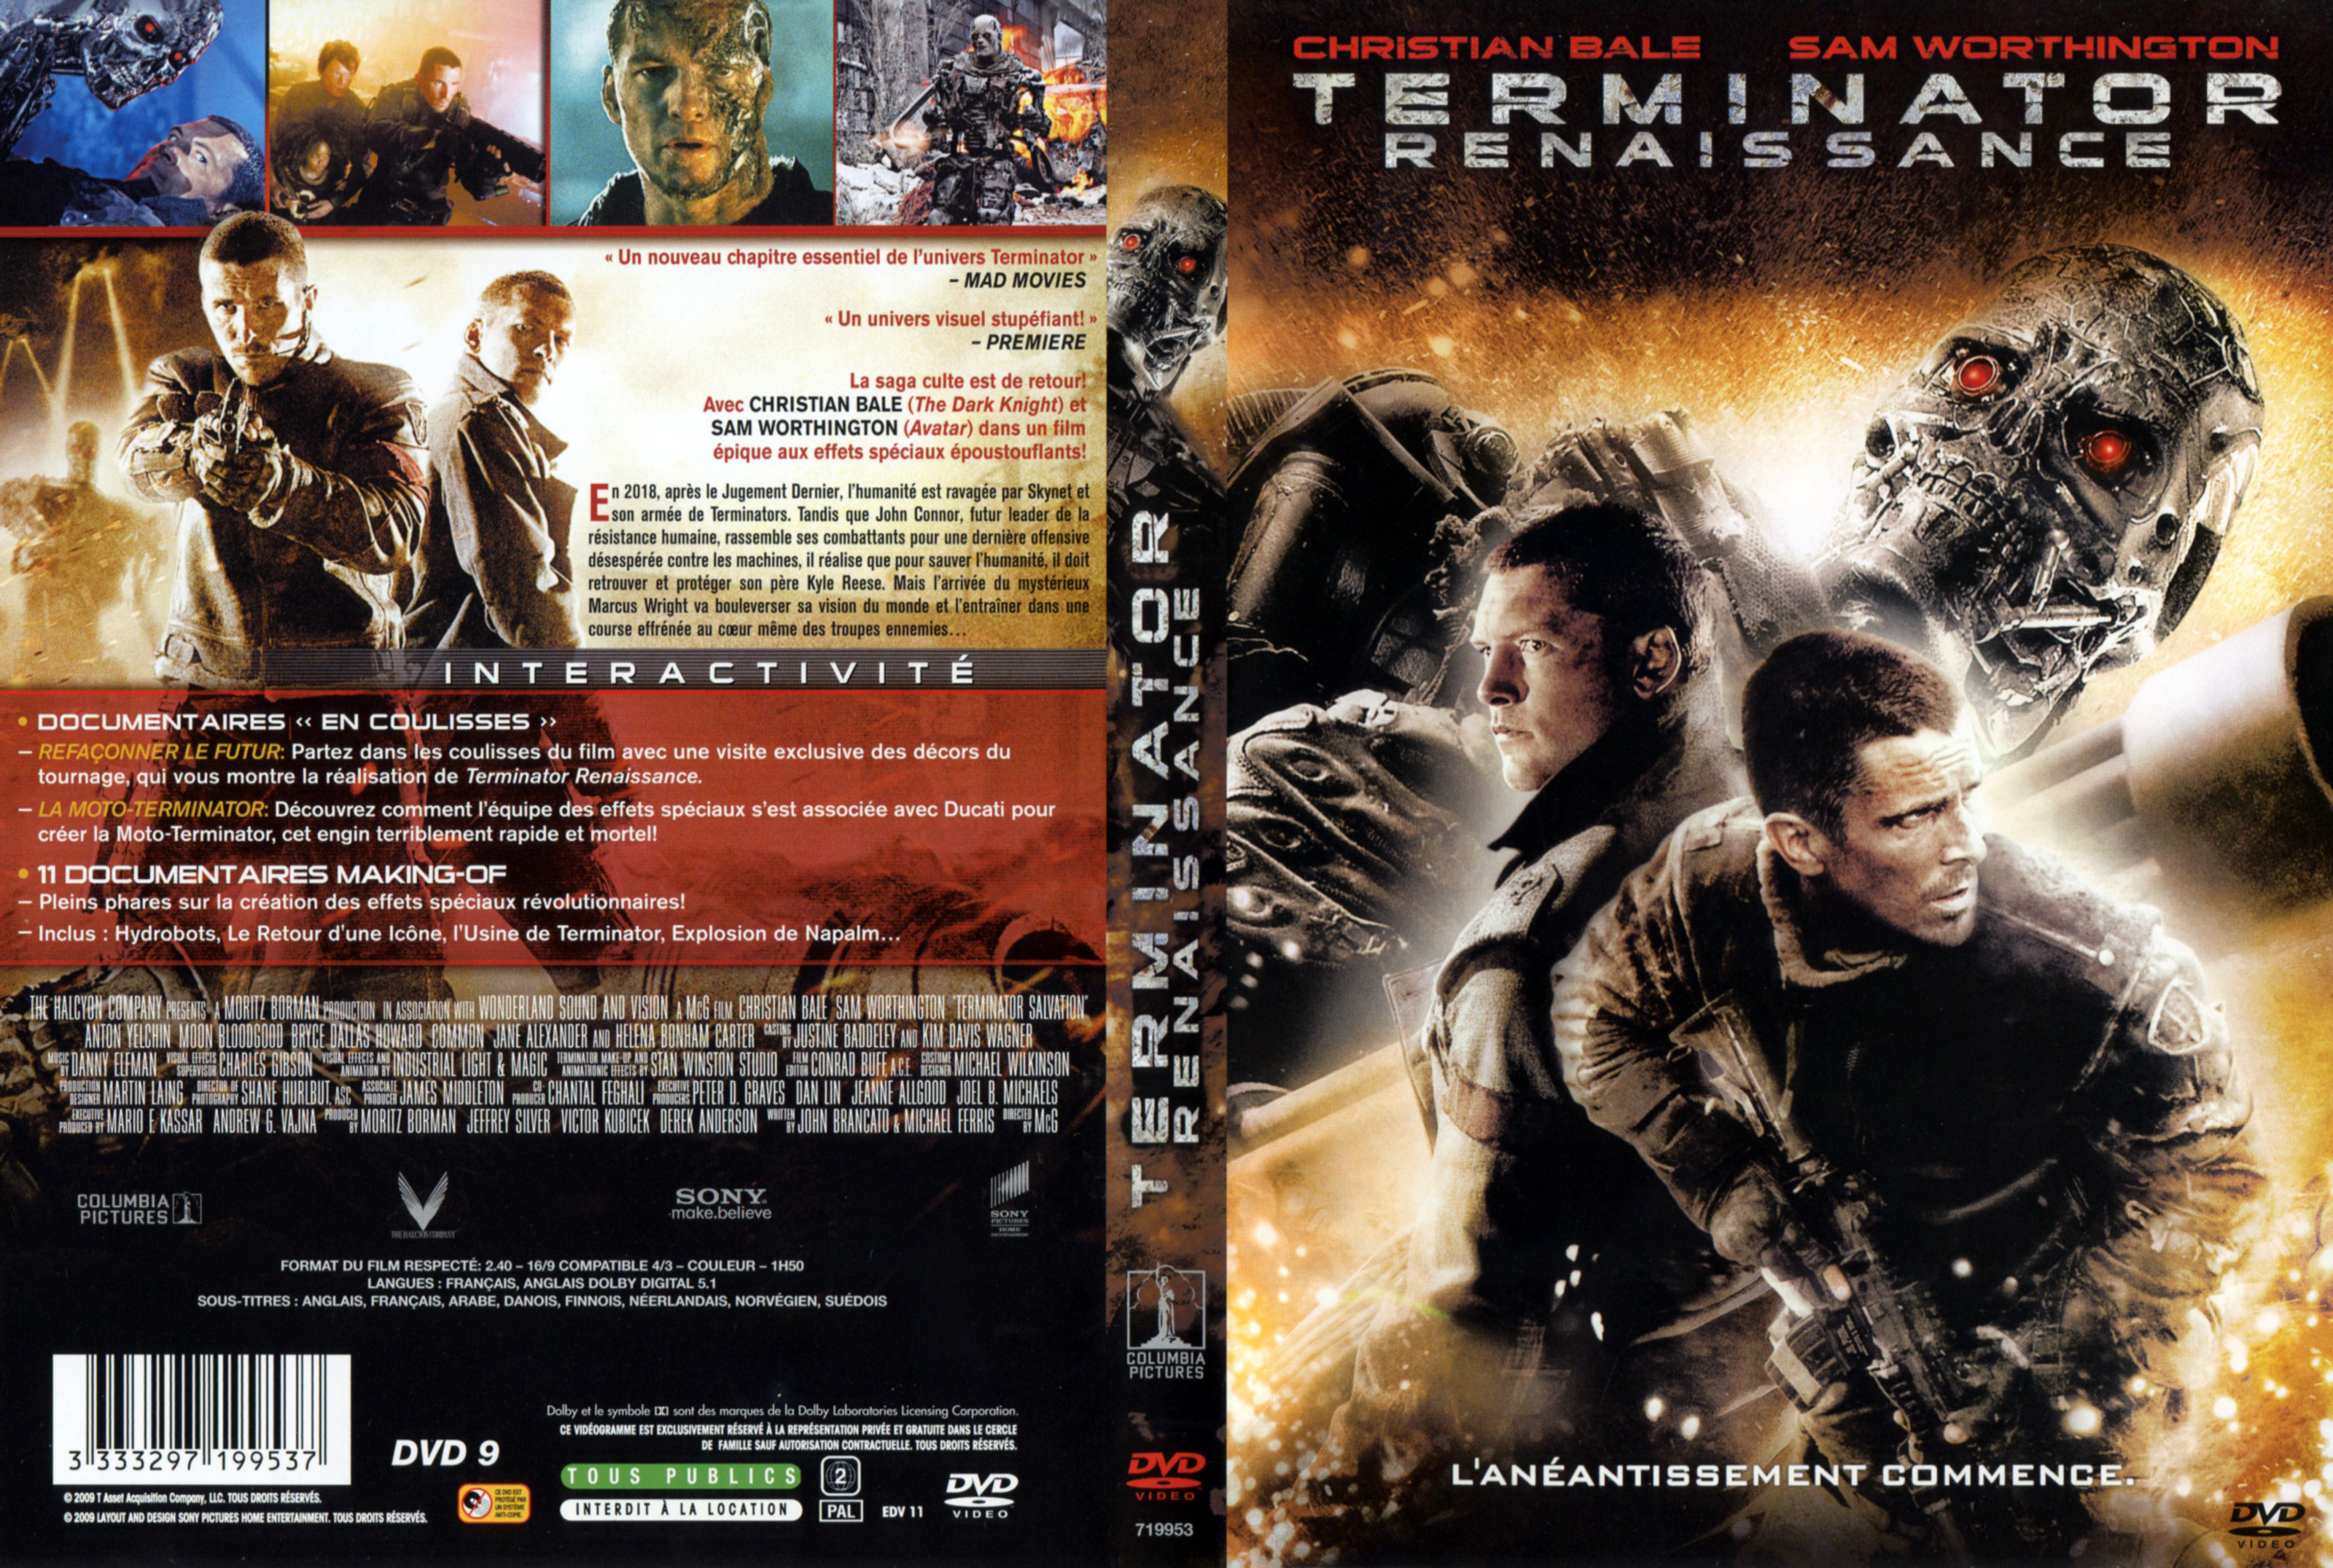 Jaquette Dvd De Terminator Renaissance V2 Cinéma Passion